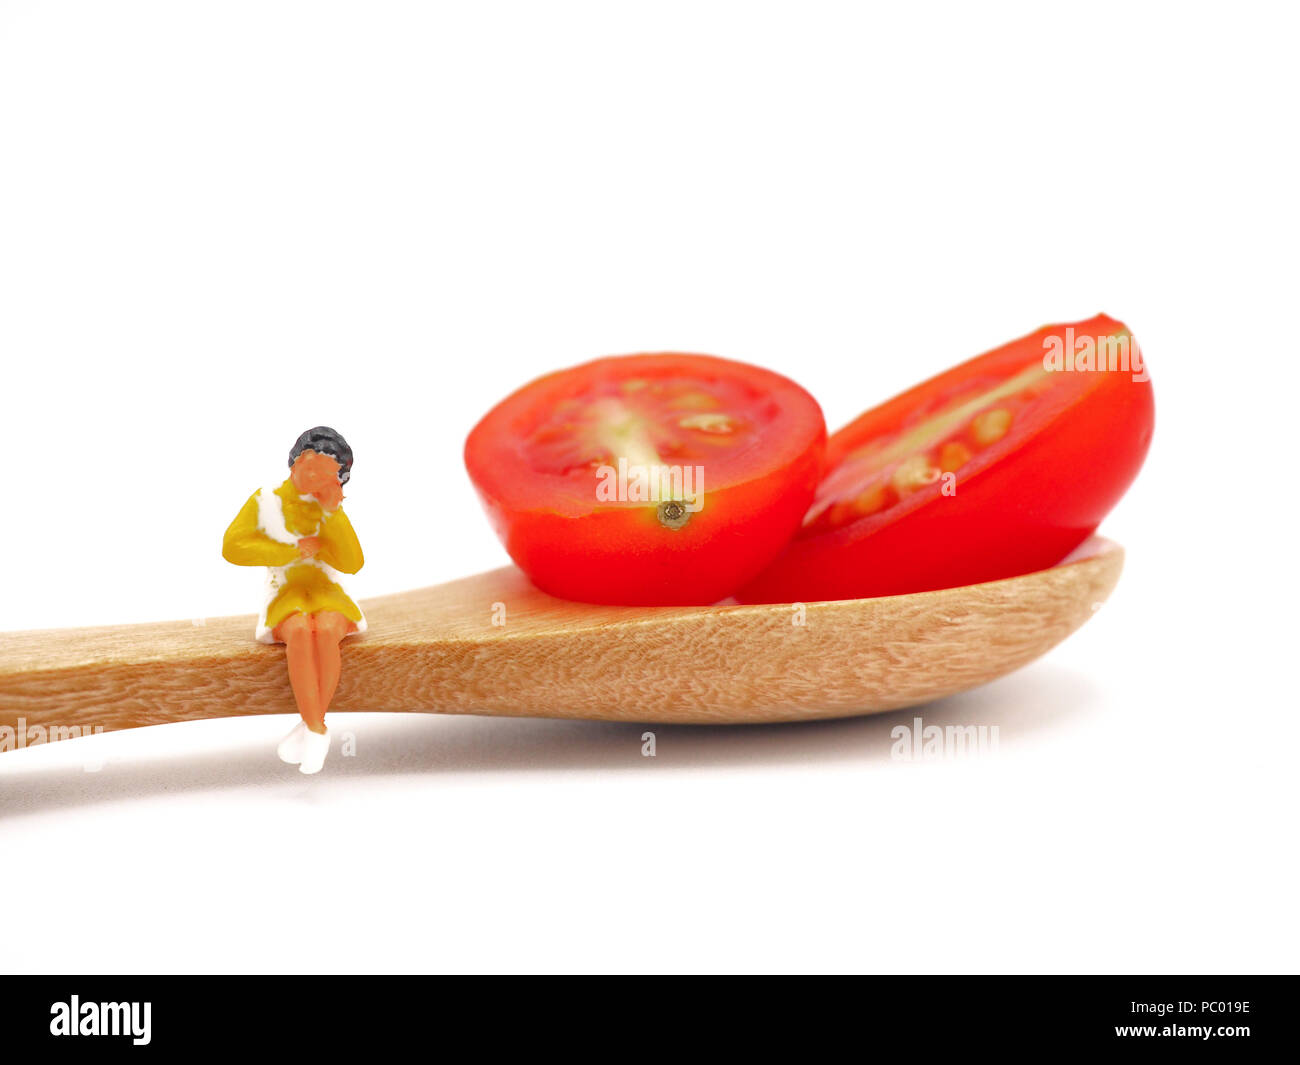 Femme assise sur miniature ou de raisin frais tomate cerise avec une cuillère de bois, la pensée de la perte de poids et de corps mince. Concept de vie sain bac blanc. Banque D'Images